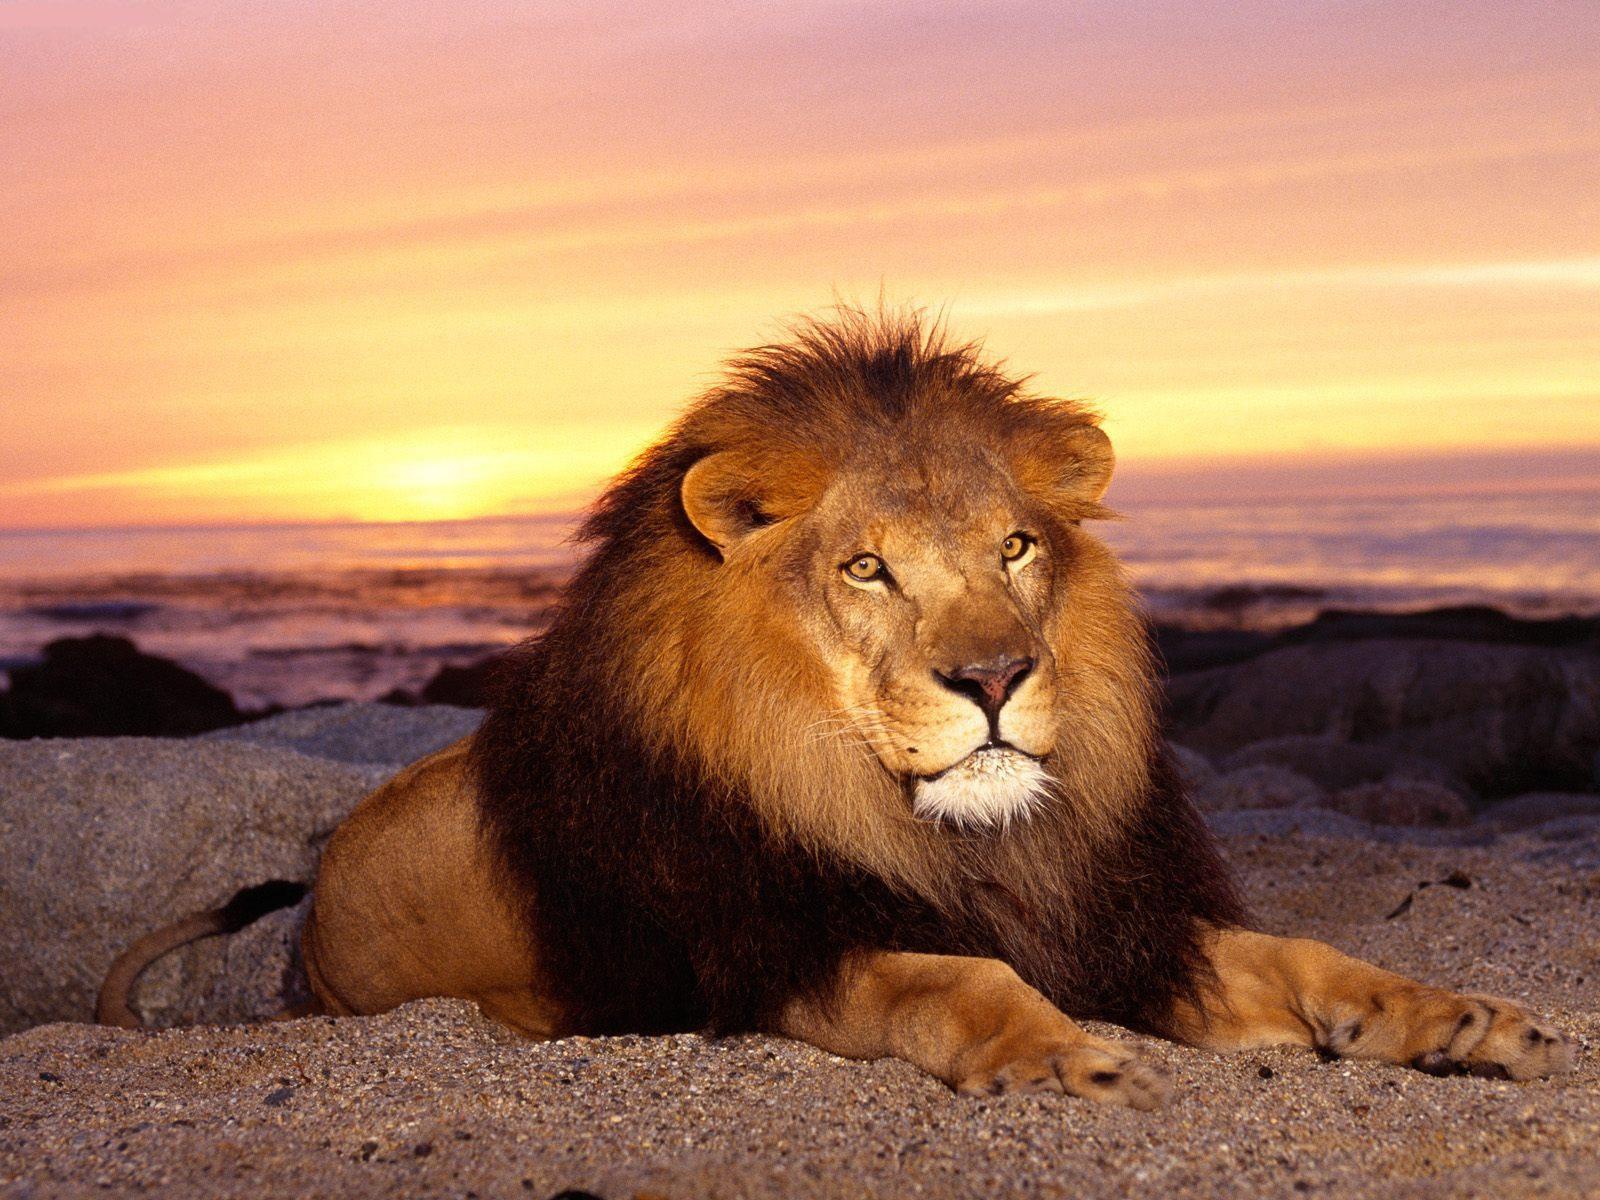 HD Lion Picture Lions Wallpaper